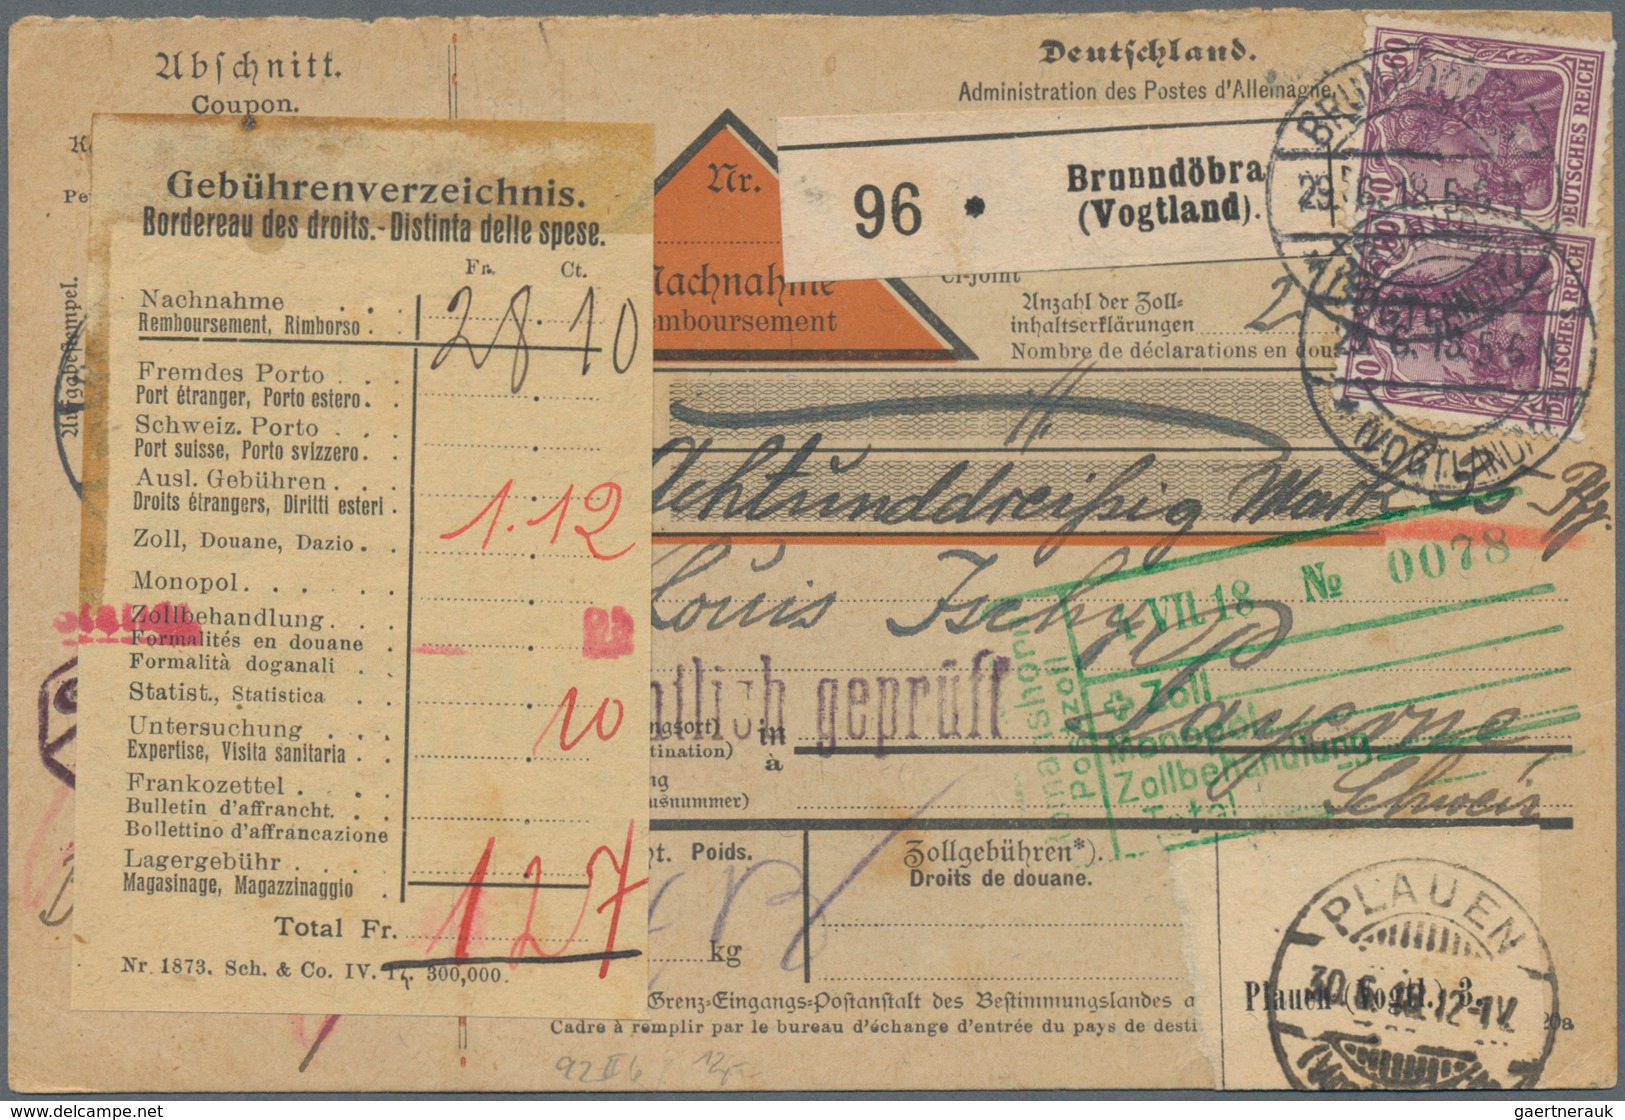 Deutsches Reich - Germania: 1919/1922 (dabei 2 Stücke aus 1891). Lot von 13 meist besseren Paketkart